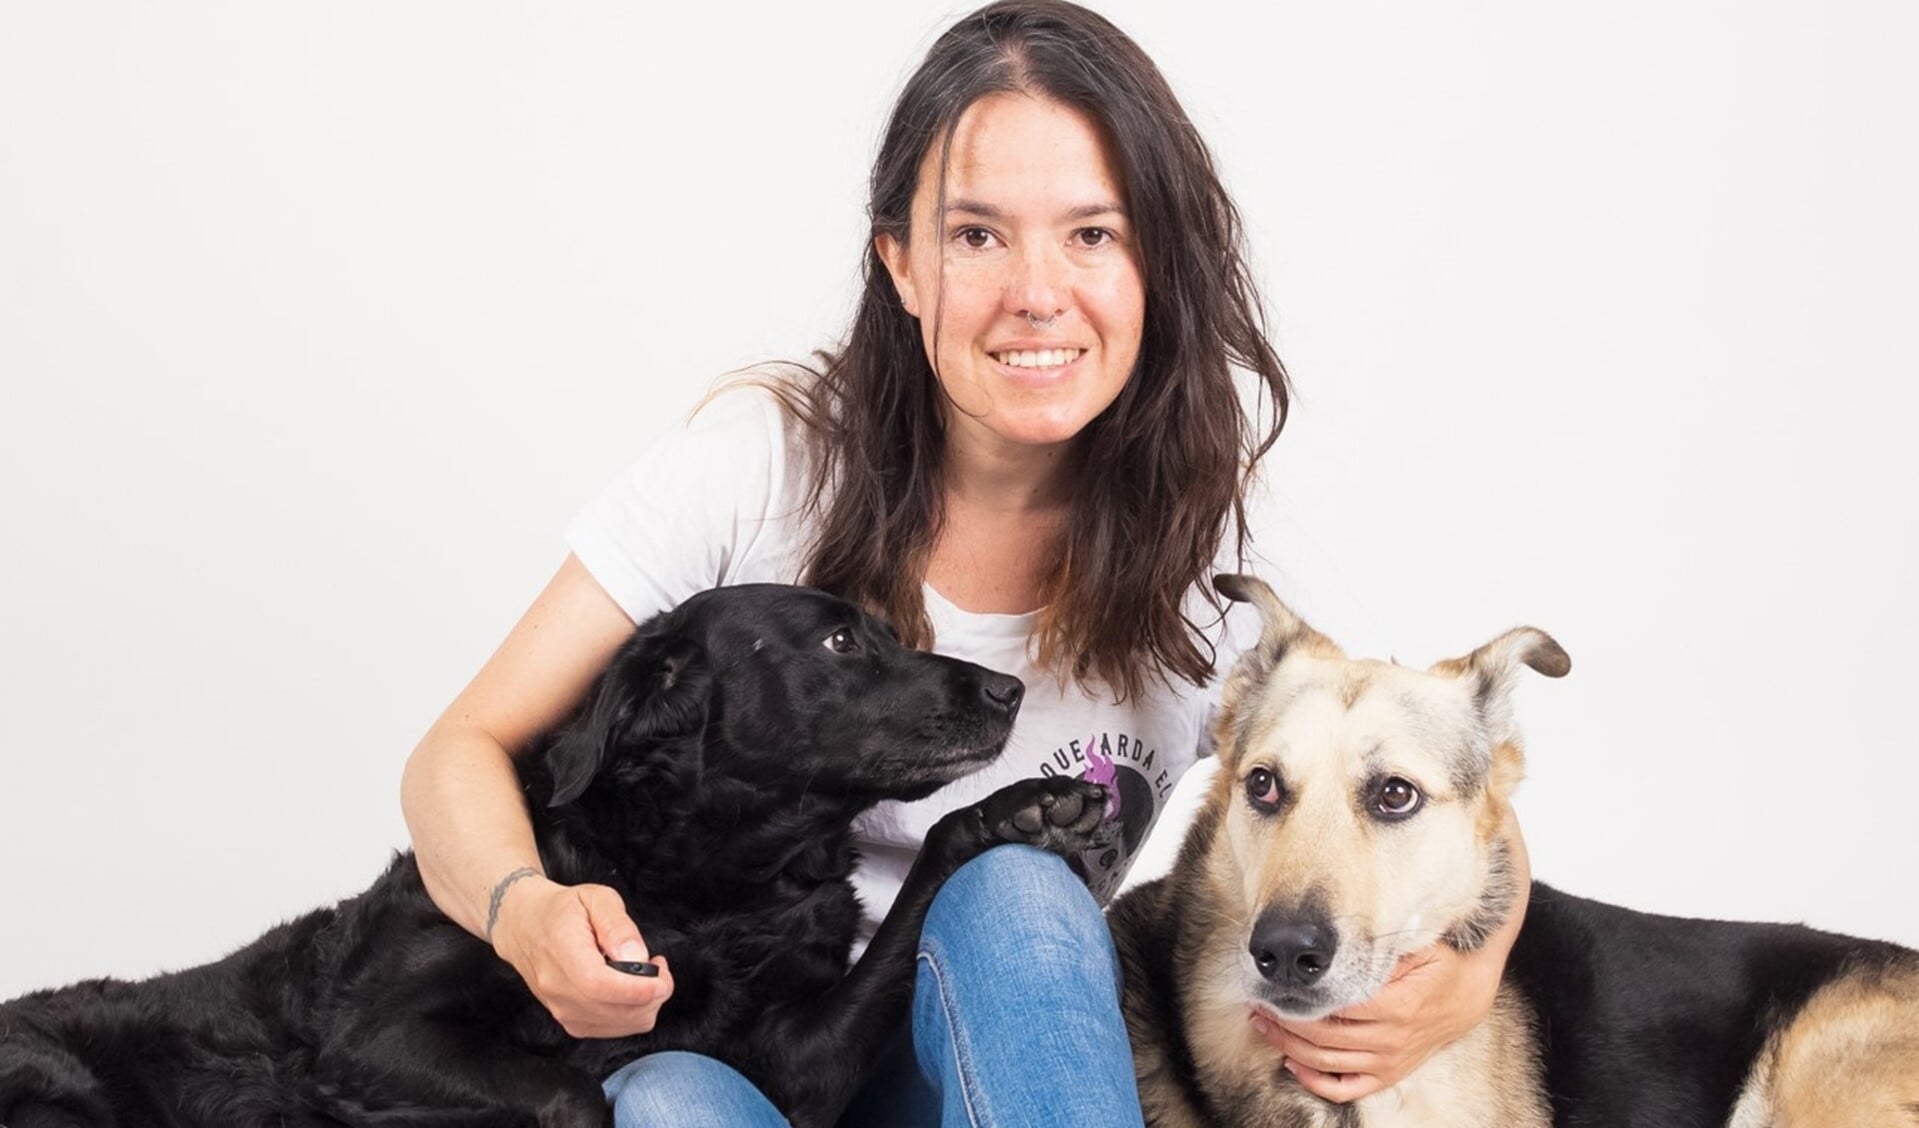 Niet alleen is Caro fotograaf voor De Havenloods, ze is ook een begenadigd dierenfotograaf. Zelf heeft ze twee lieve honden, Ramona en Tomassa.